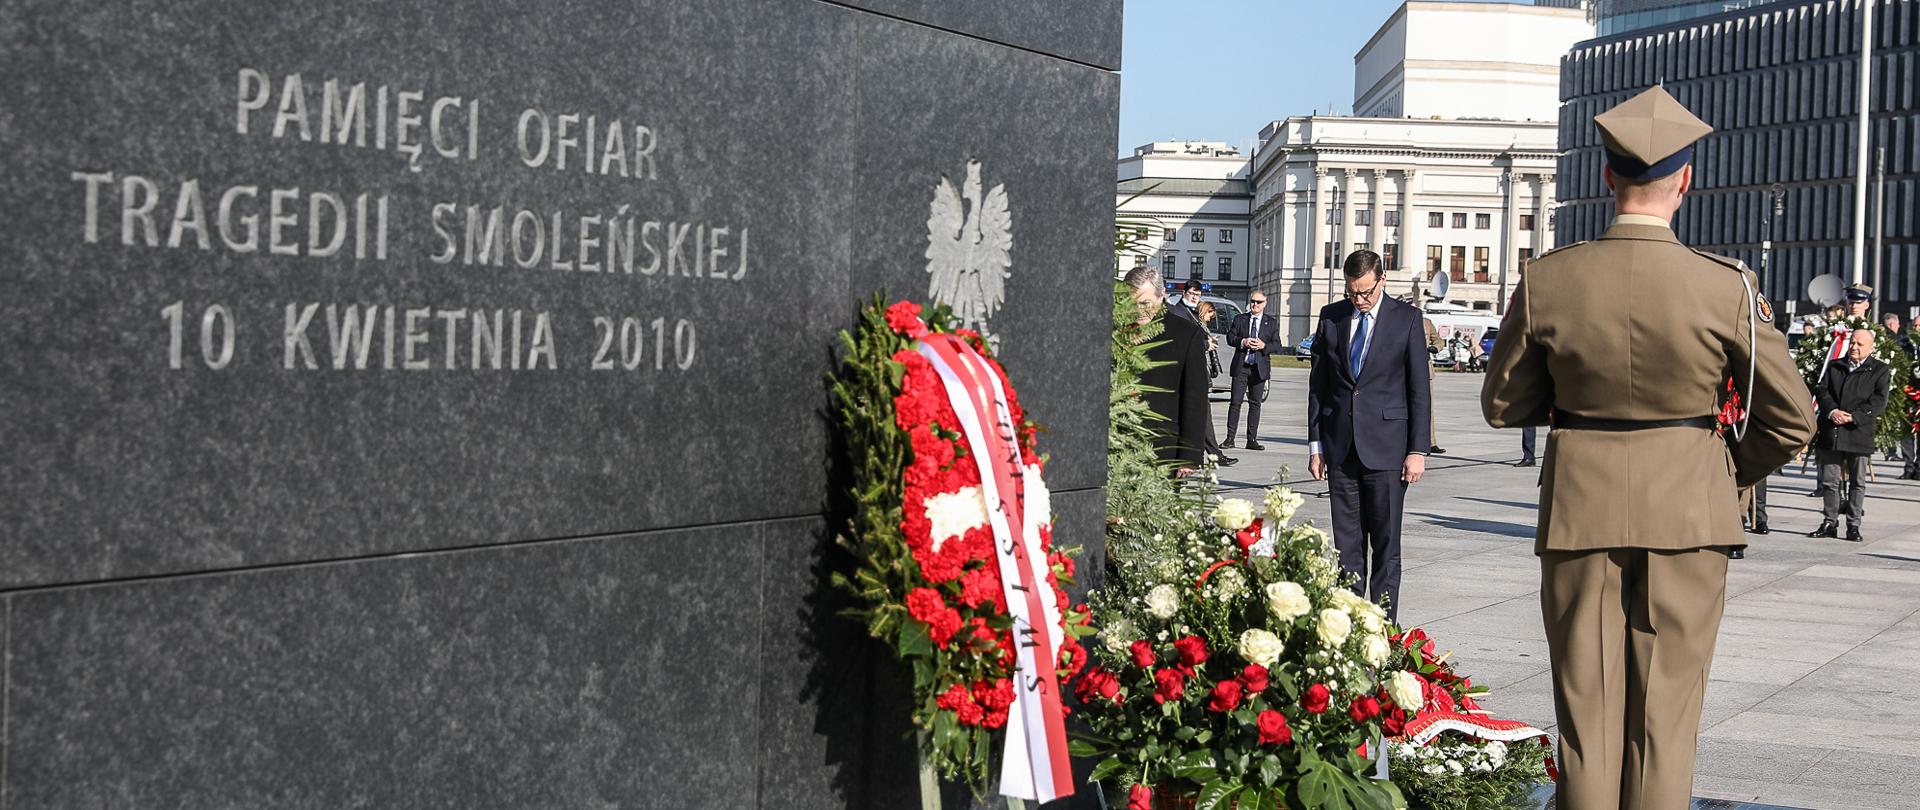 Pomnik Pamięci Ofiar Tragedii Smoleńskiej, pod nim kwiaty. Pomnika pilnuje żołnierz wojska polskiego. Przed pomnikiem hołd ofiarom składa Premier Mateusz Morawiecki.